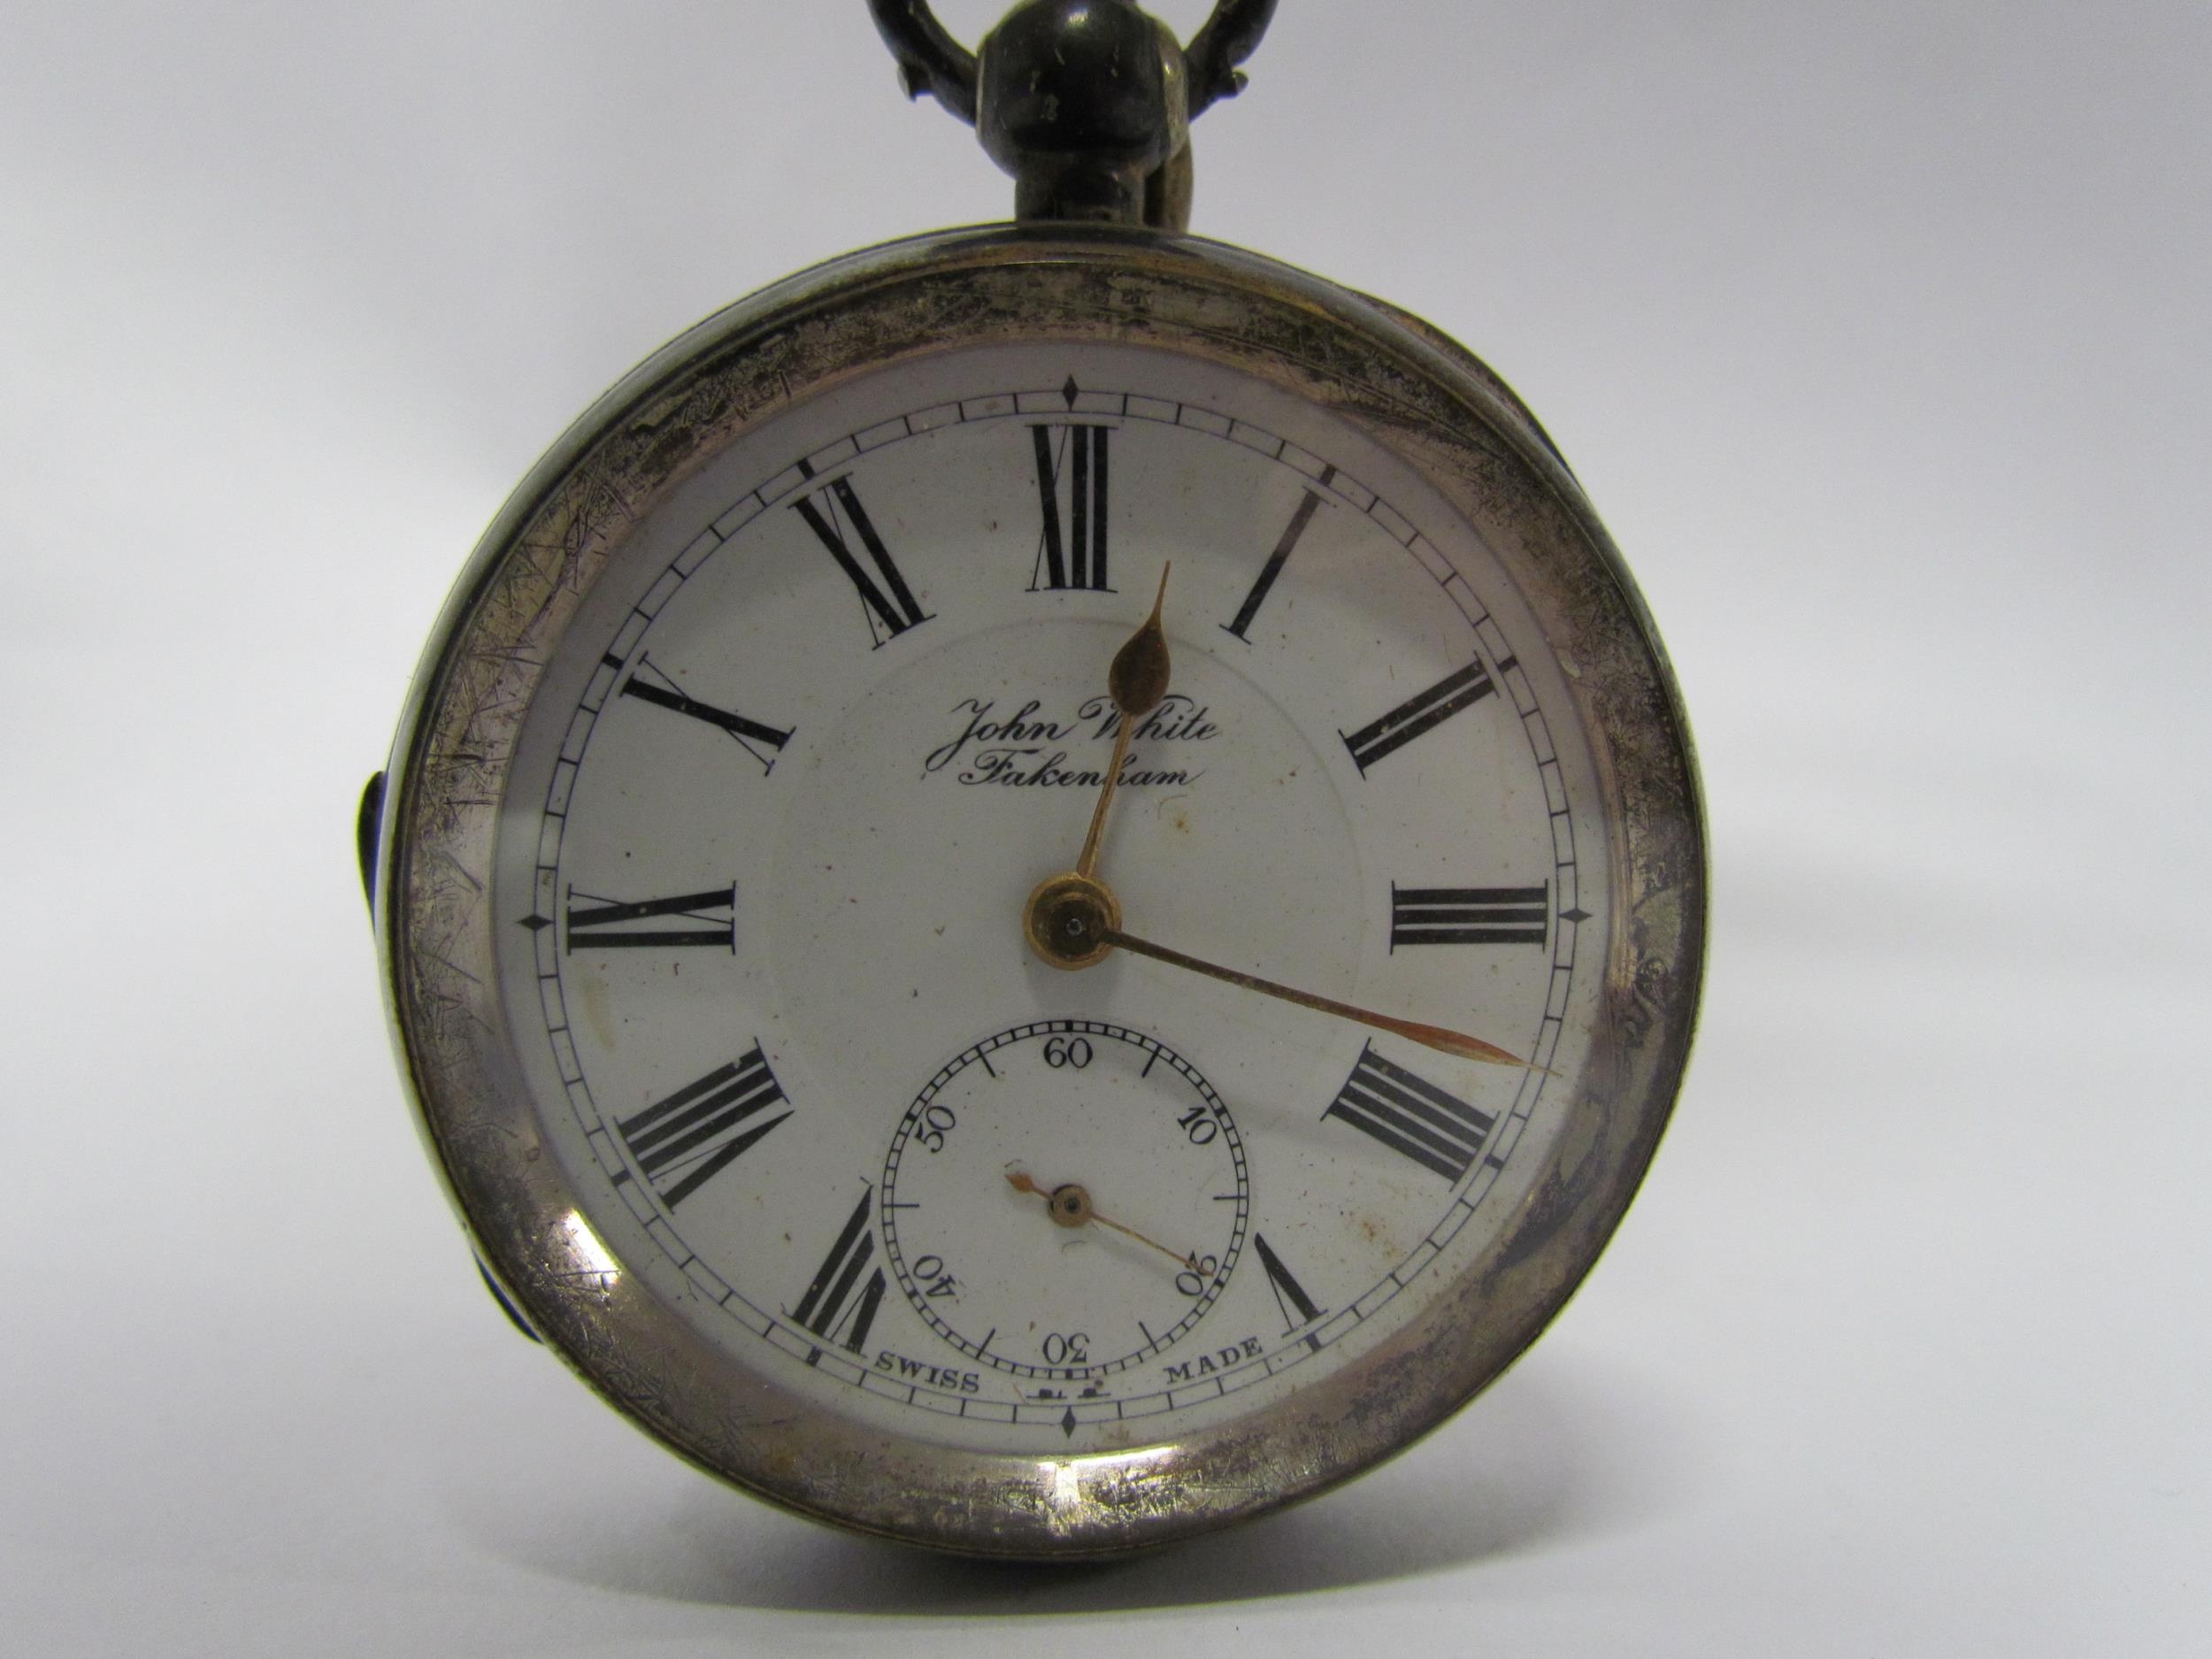 John White Fakenham silver cased pocket watch, Birmingham 1910. 5cm diameter - Image 2 of 5